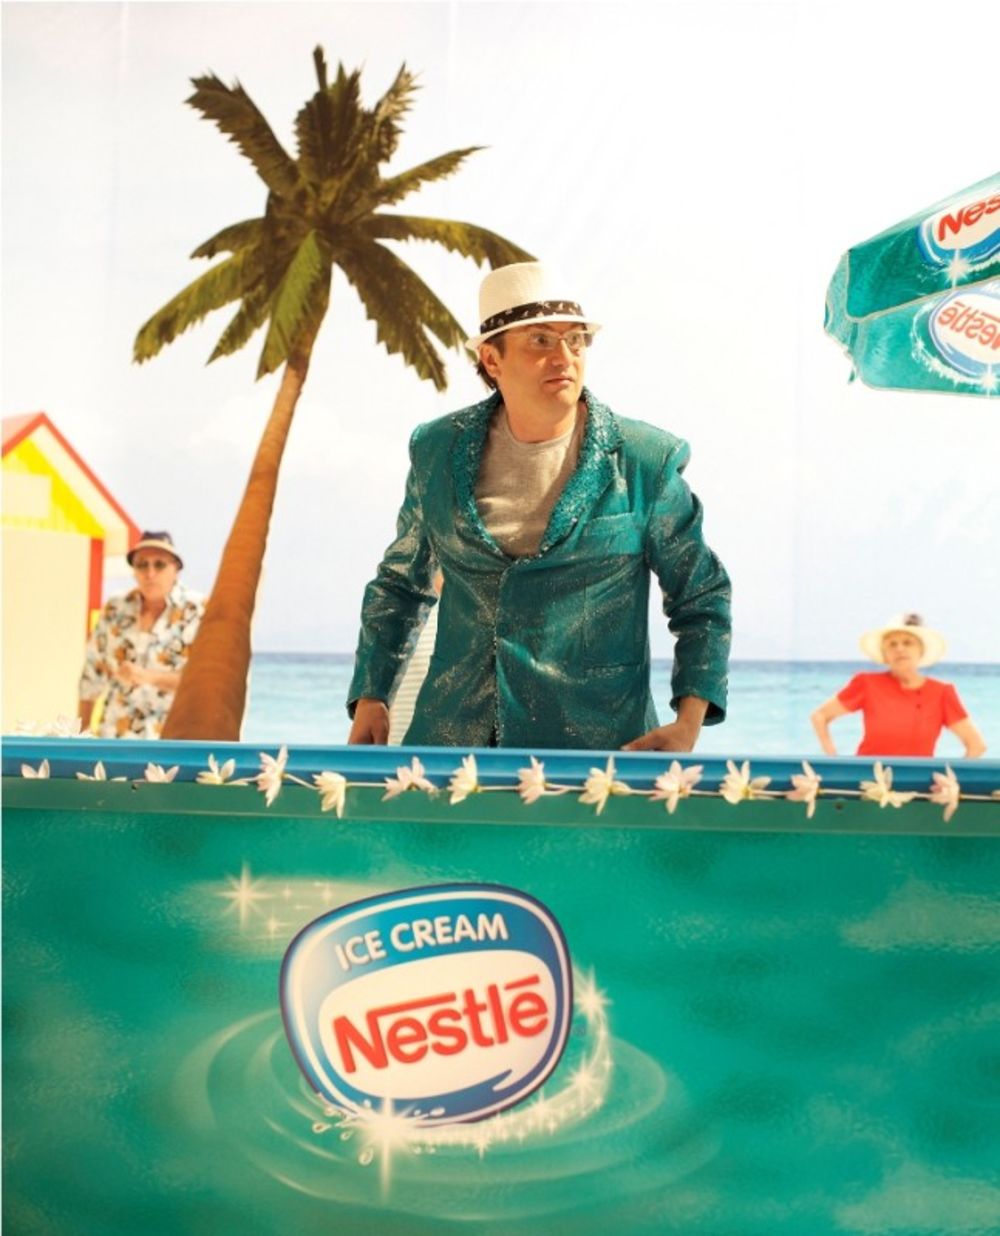 Nakon što je prošlogodišnji reklamni spot sa popularnim Flamingosima osvojio publiku, kompanija Nestle je odlučila da i ove godine snimi spot za nove ukuse sladoleda Hit i Top Gun sa još jednom zvezdom, Rambom Amadeusom